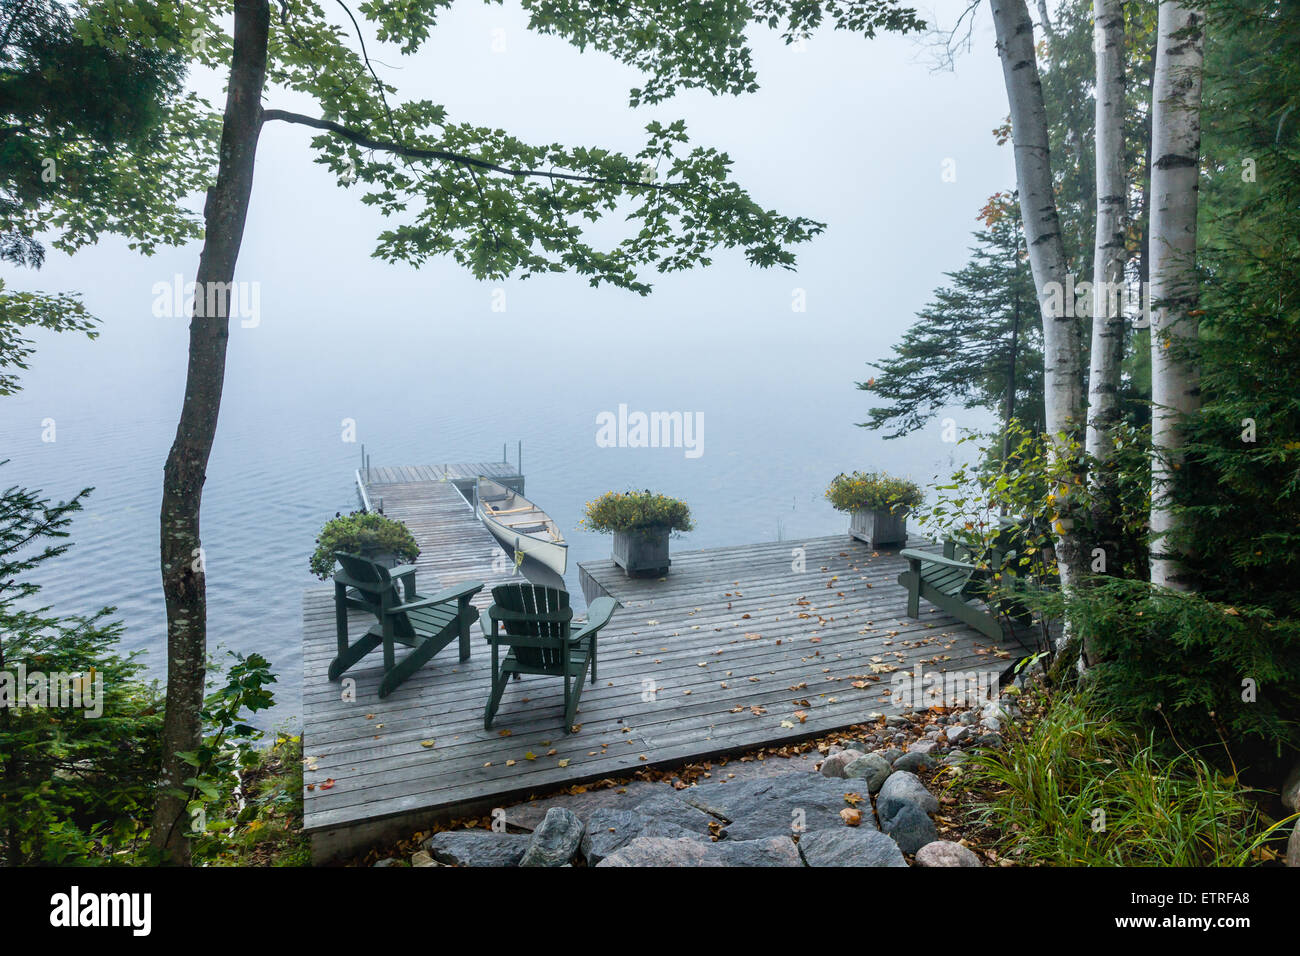 Tôt le matin voir de quai avec des bouleaux, des chaises et du brouillard sur le lac. Banque D'Images